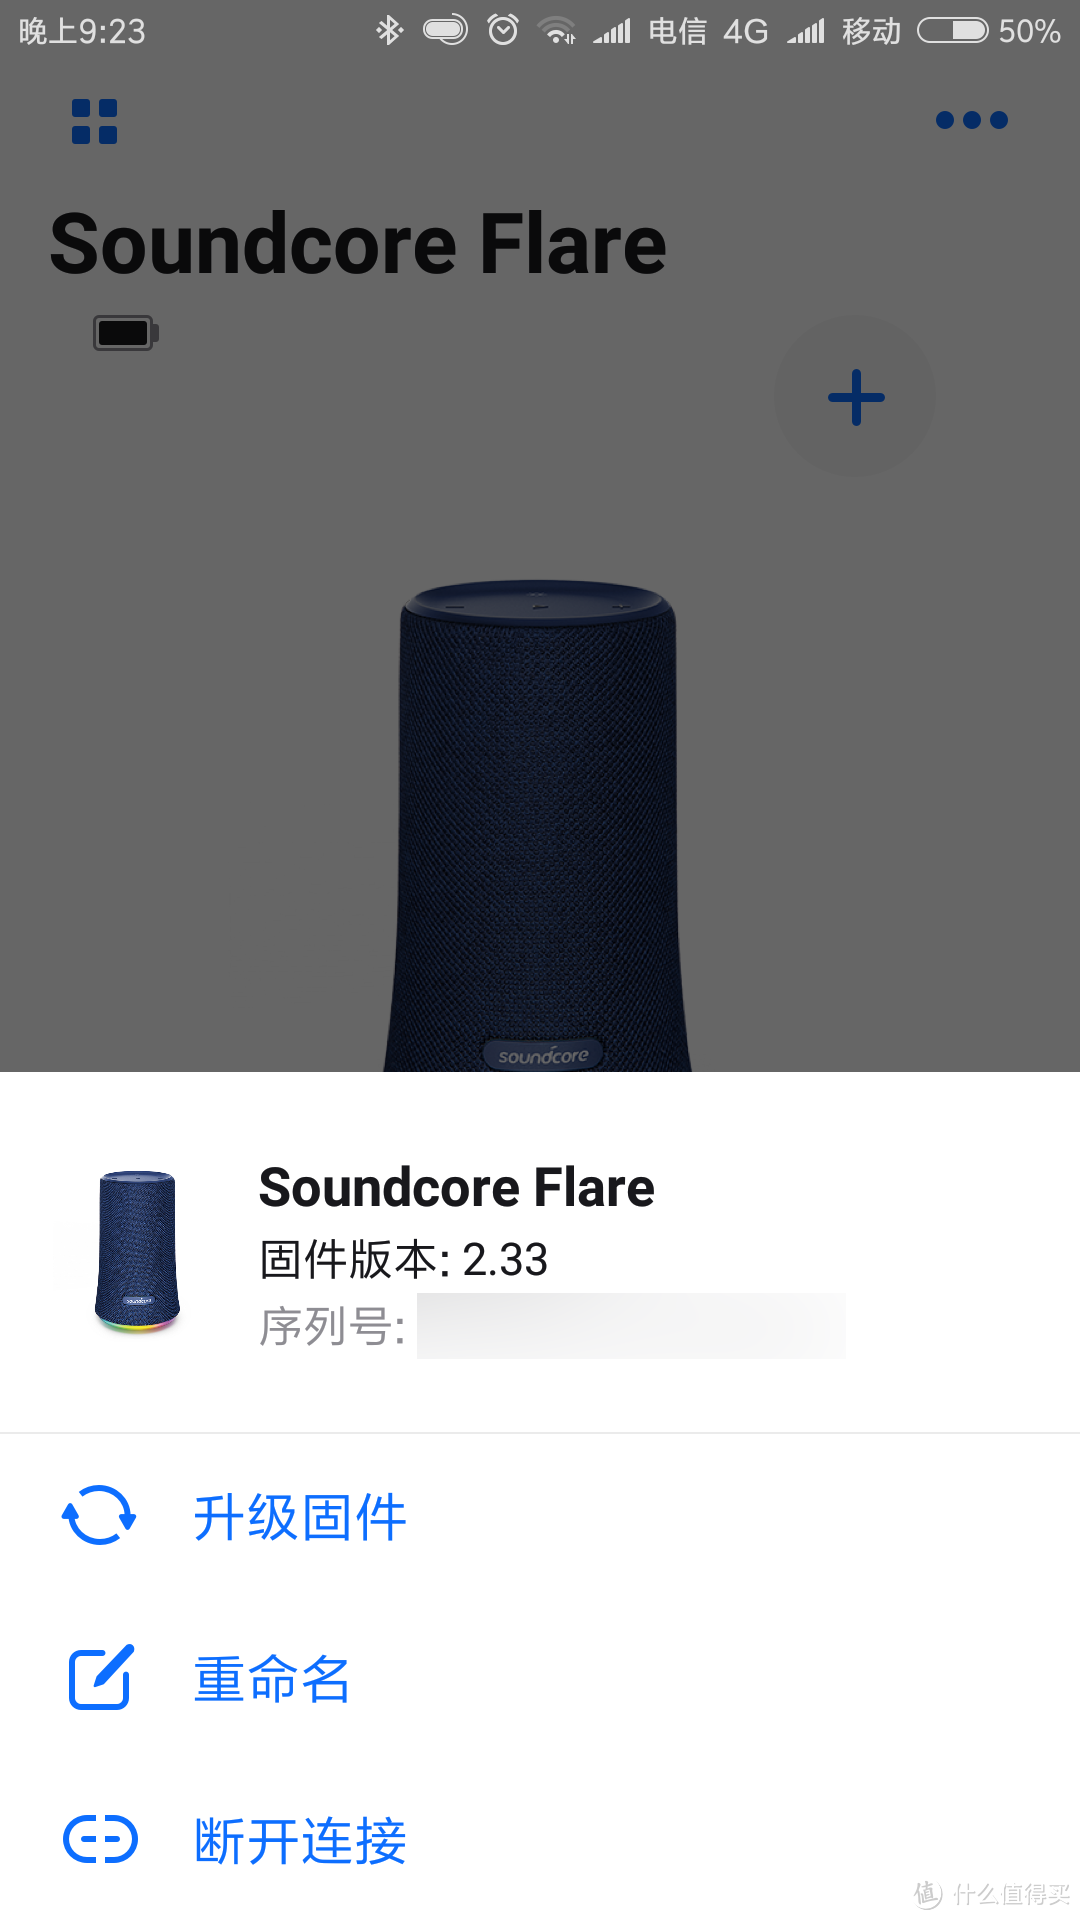 妙曼炫彩 - Soundcore Flare 燃！蓝牙音箱评测